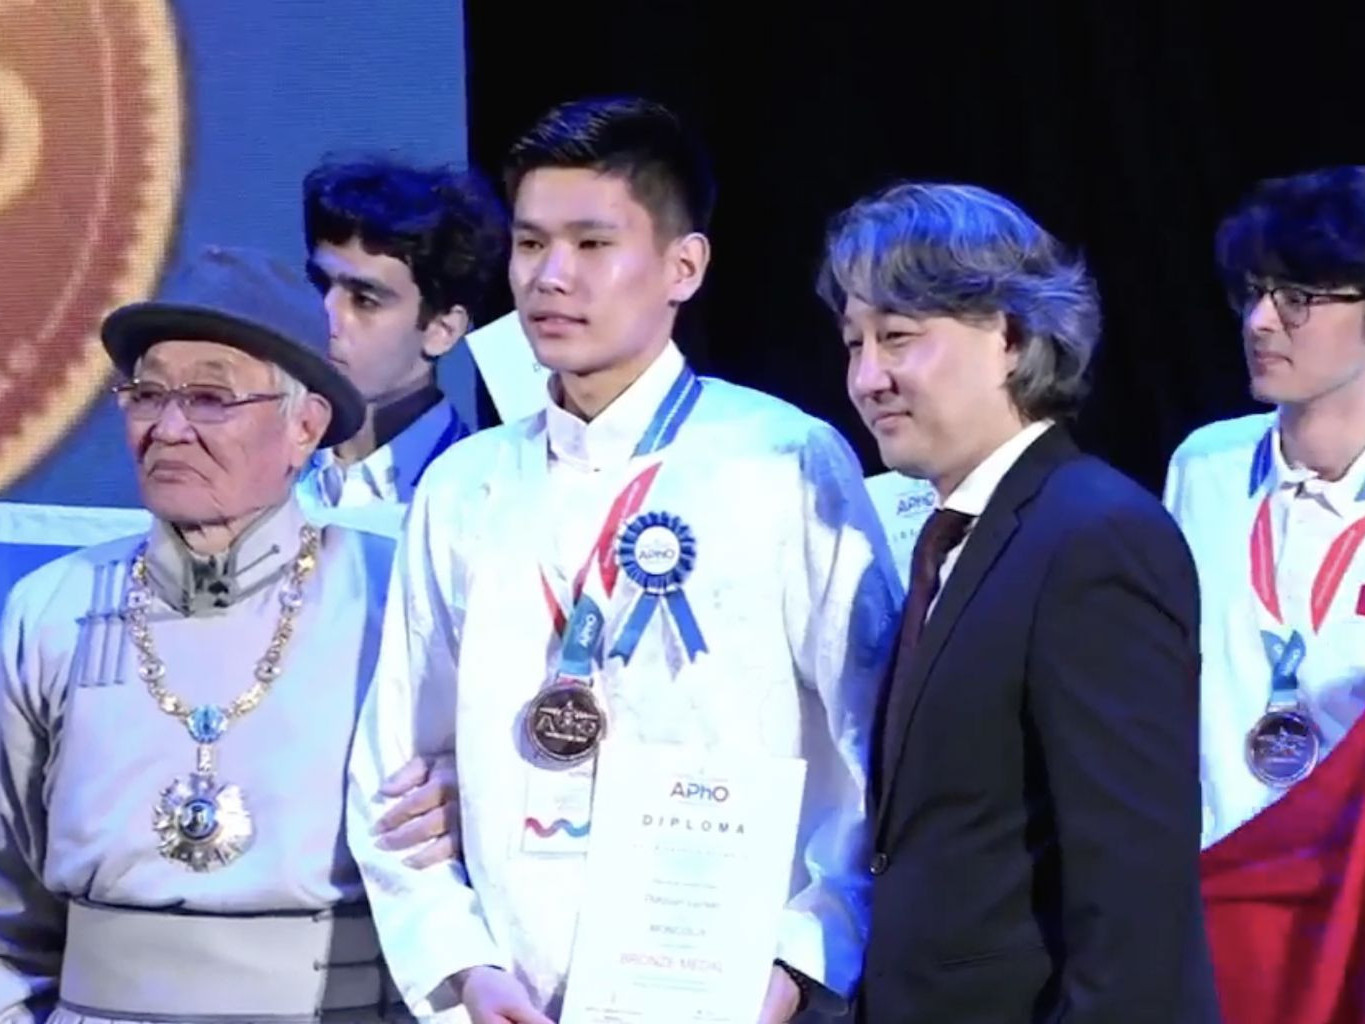 Азийн физикийн олимпиадаас 11 дүгээр сургуулийн сурагч Л.Дөлгөөн хүрэл медаль хүртлээ